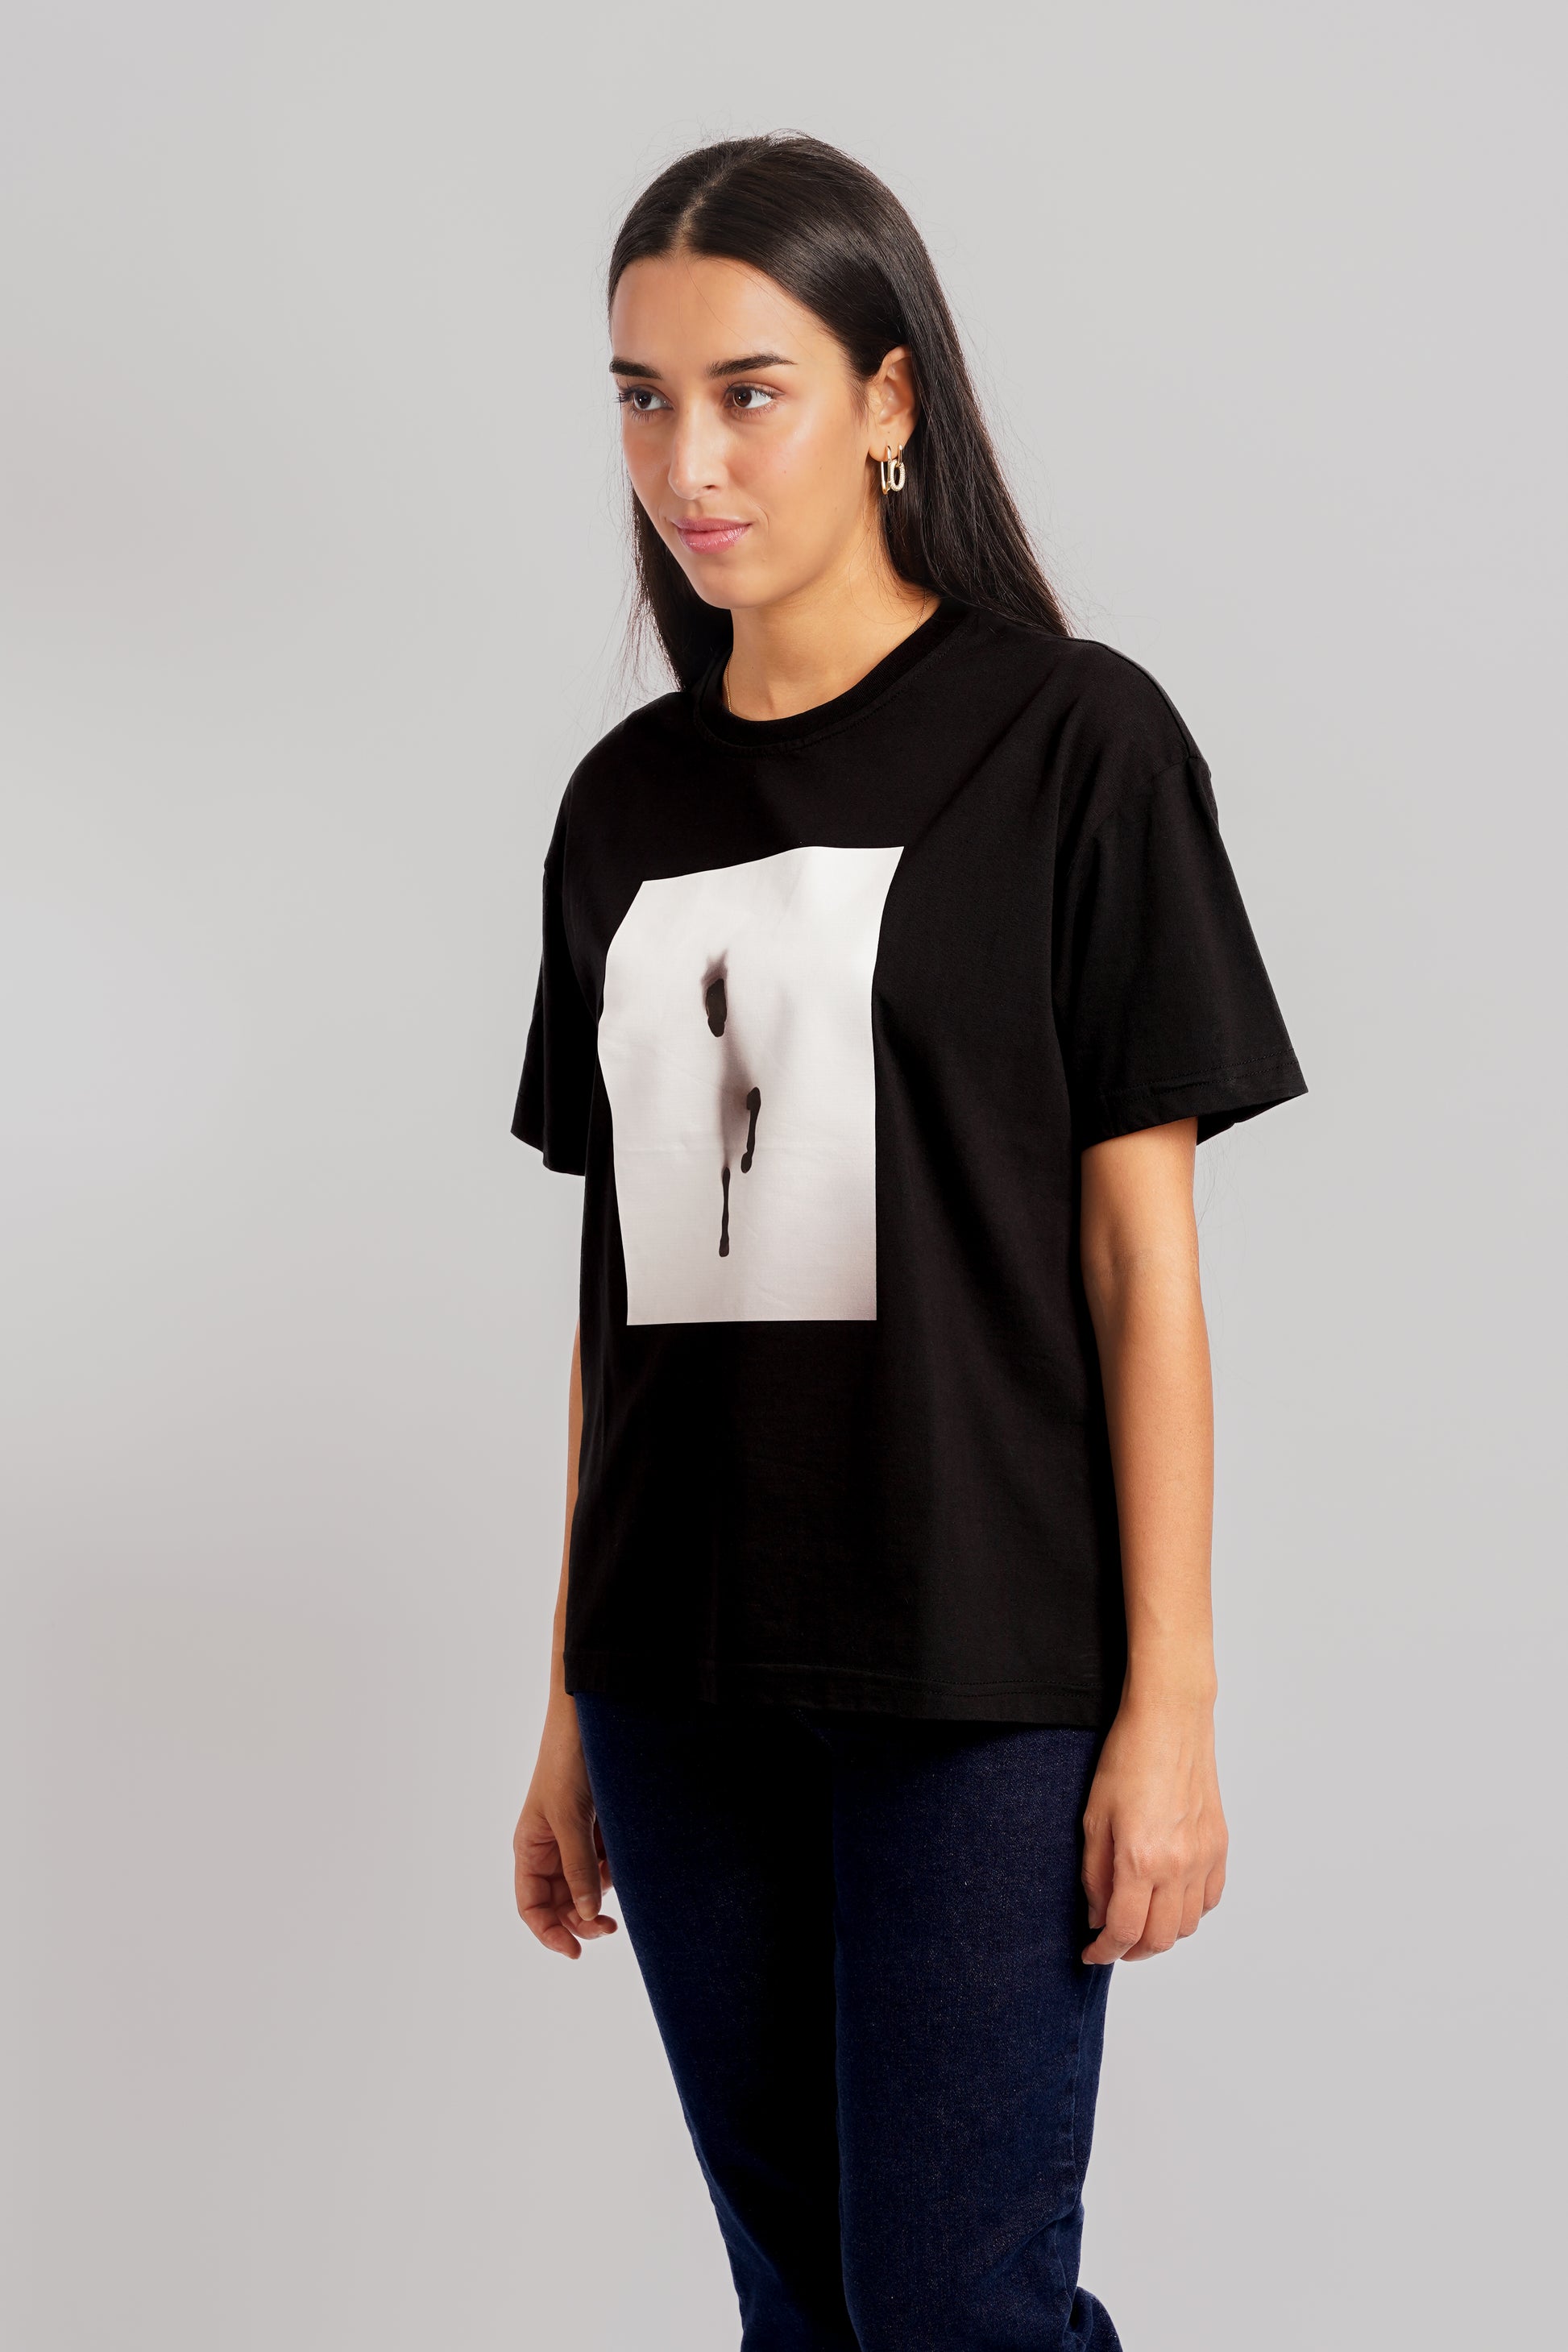 Arabian T-Shirt Women